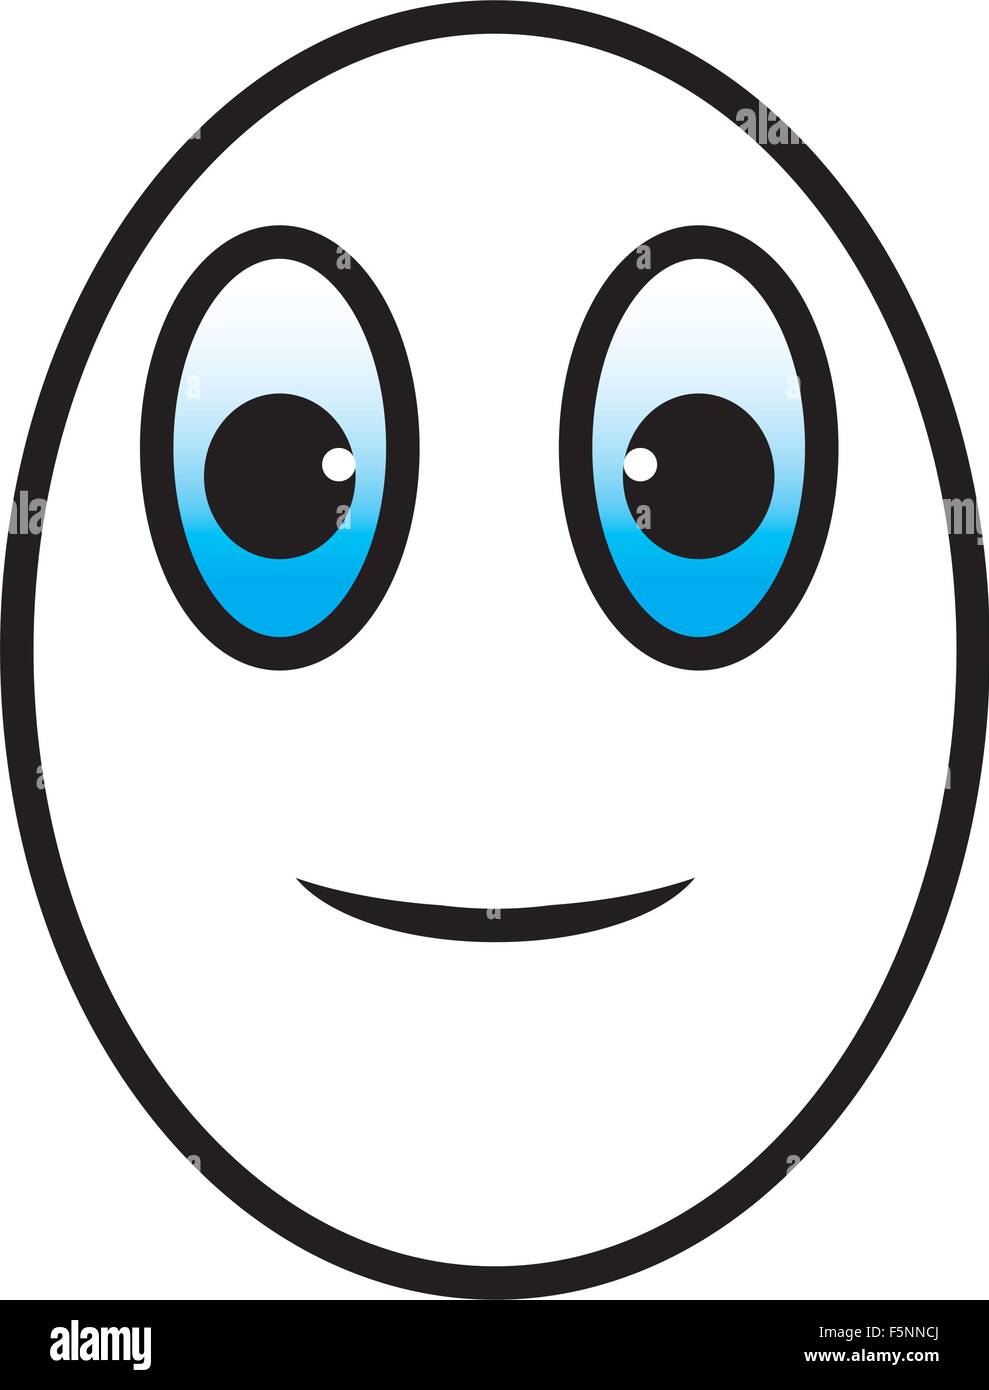 Eggman caricature visage sourire avec les yeux bleus Illustration de Vecteur